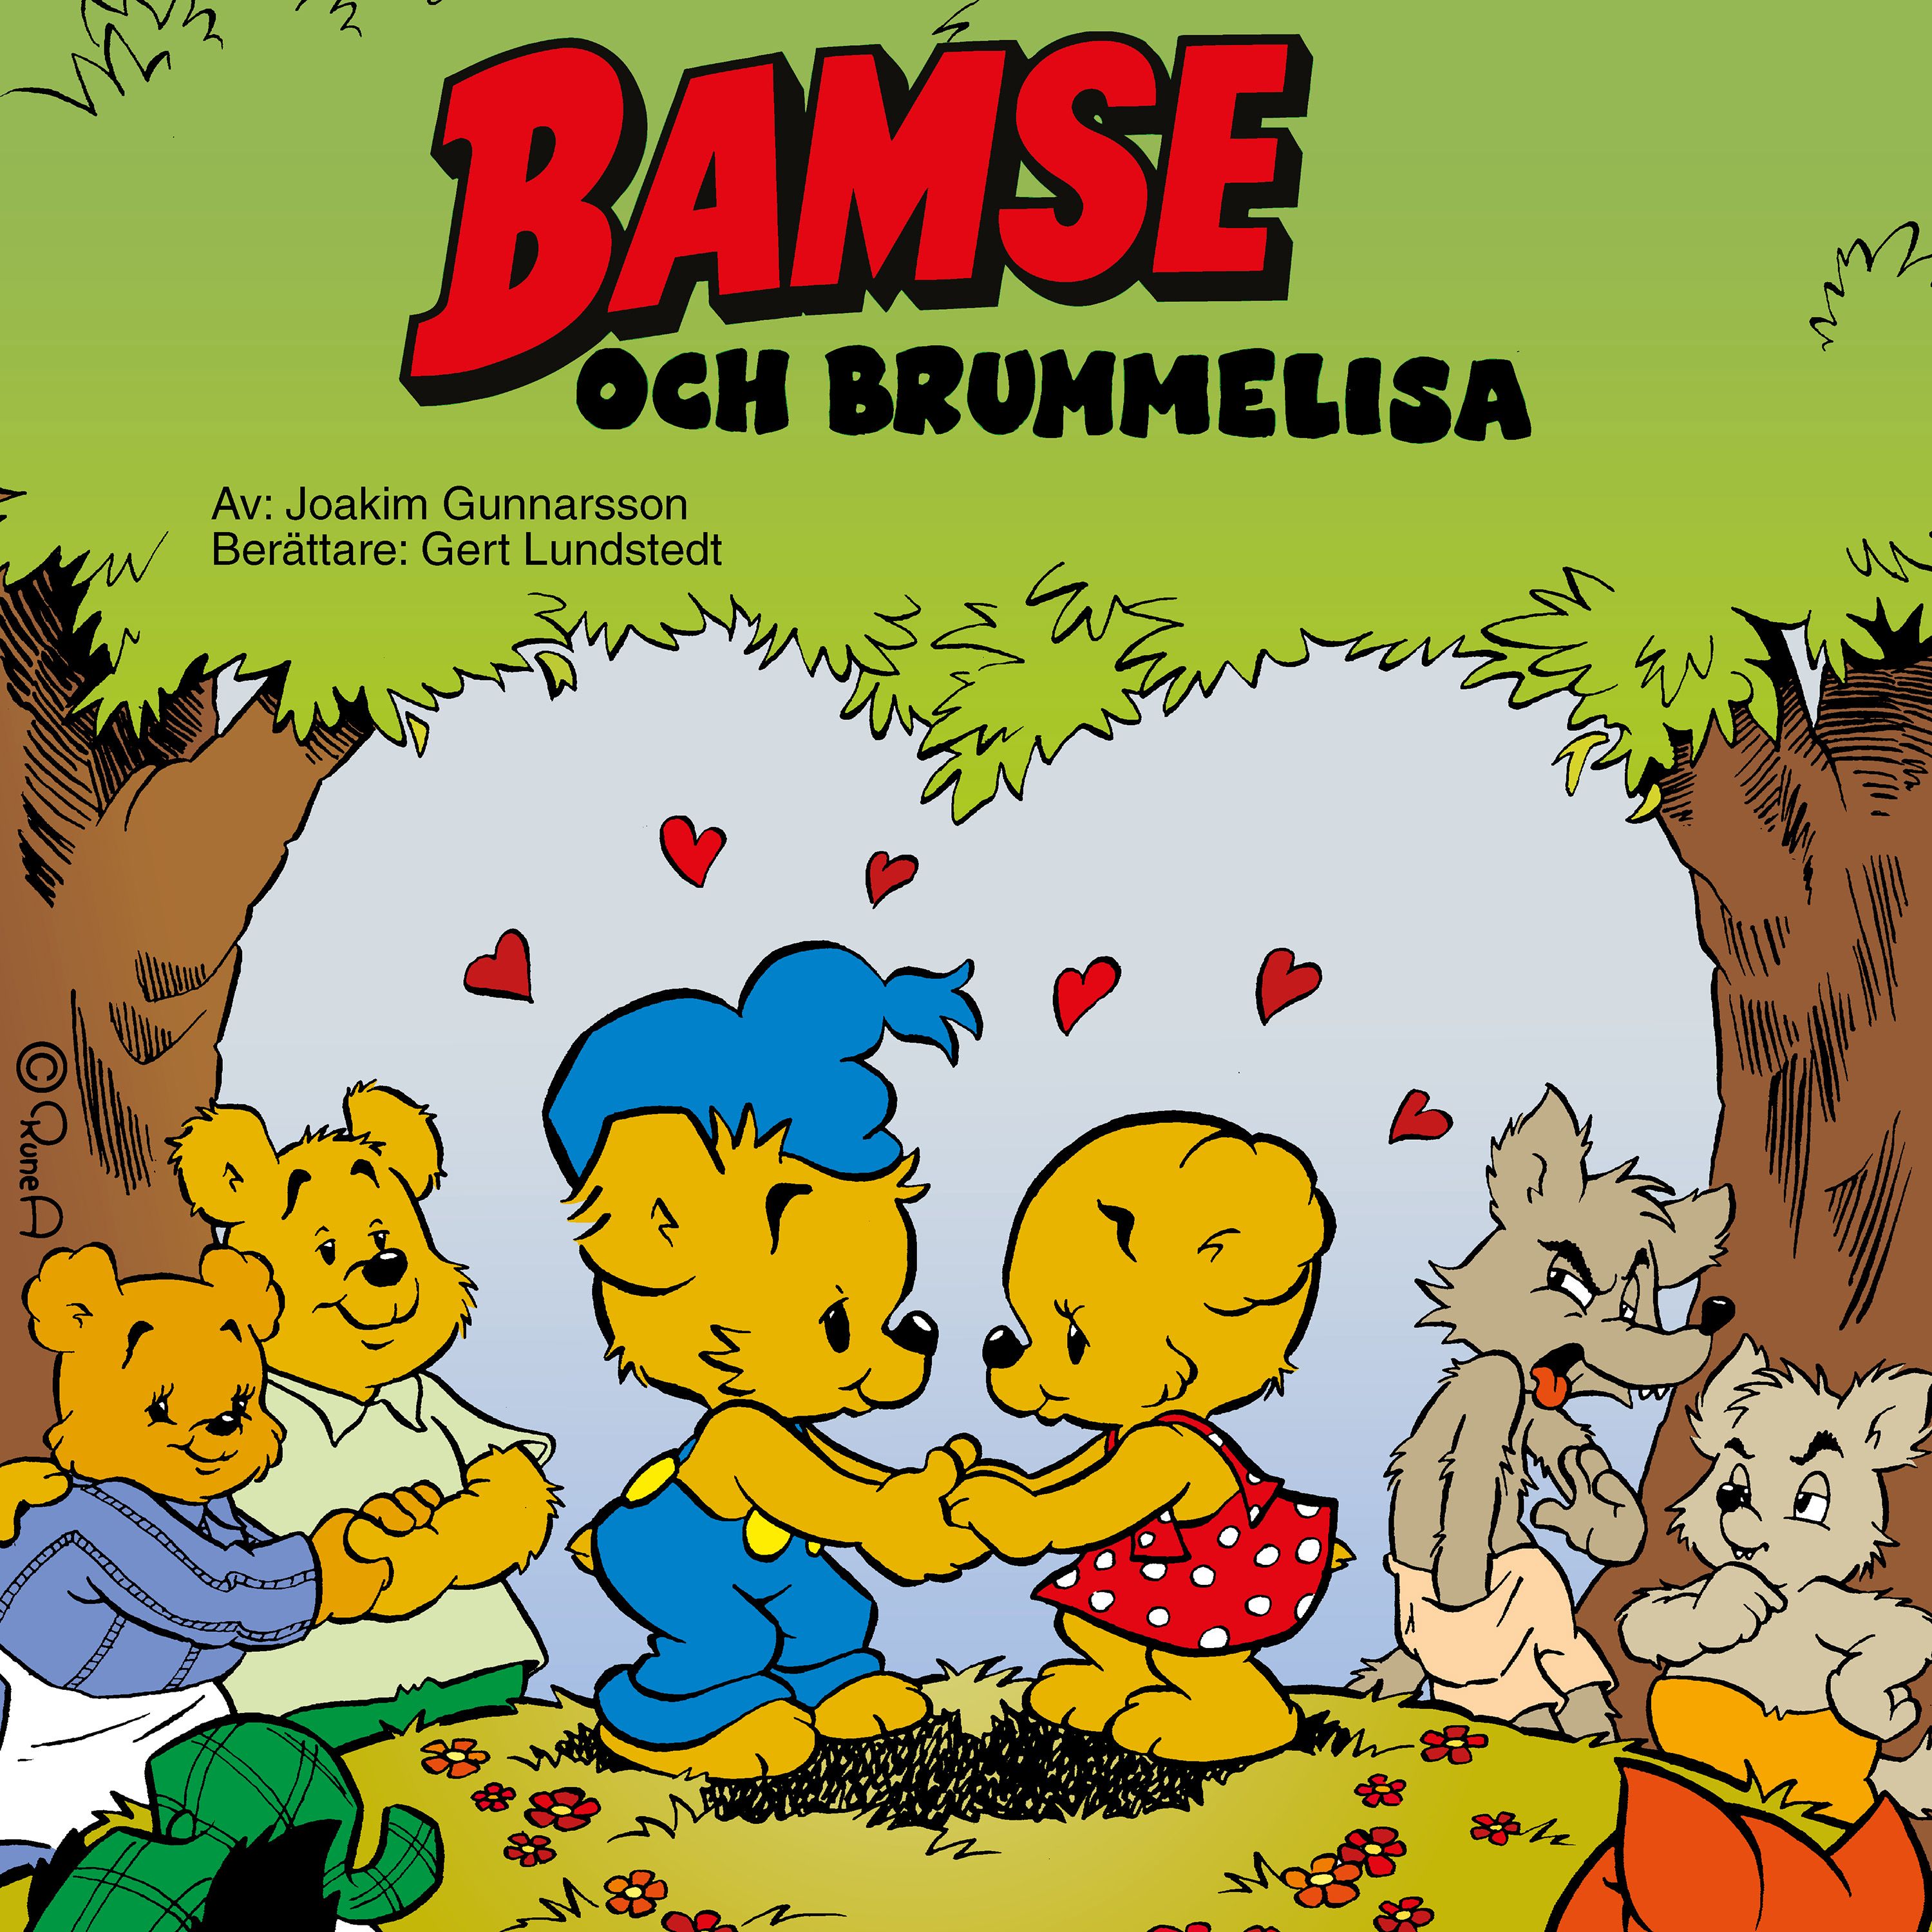 Bamse och Brummelisa, audiobook by Joakim Gunnarsson